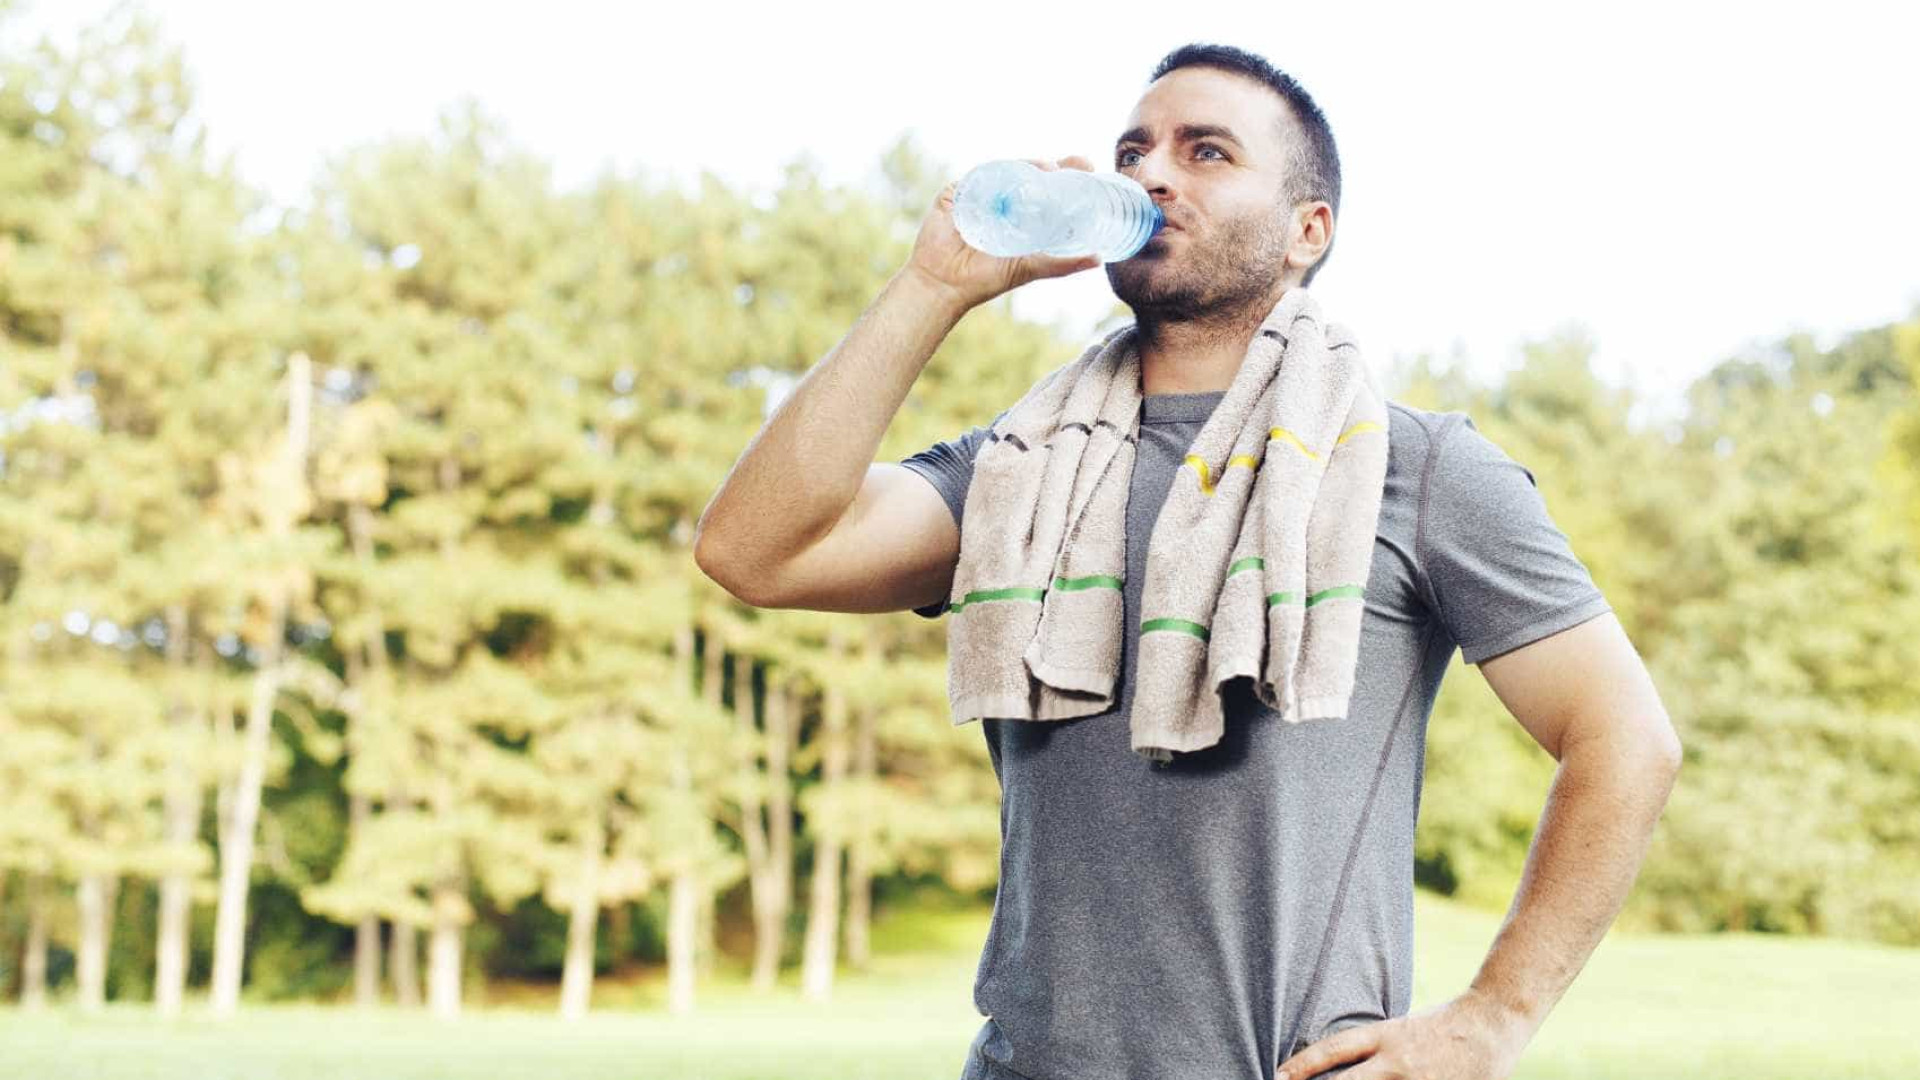 Descubra quanta água deve beber 
antes, durante e depois do treino